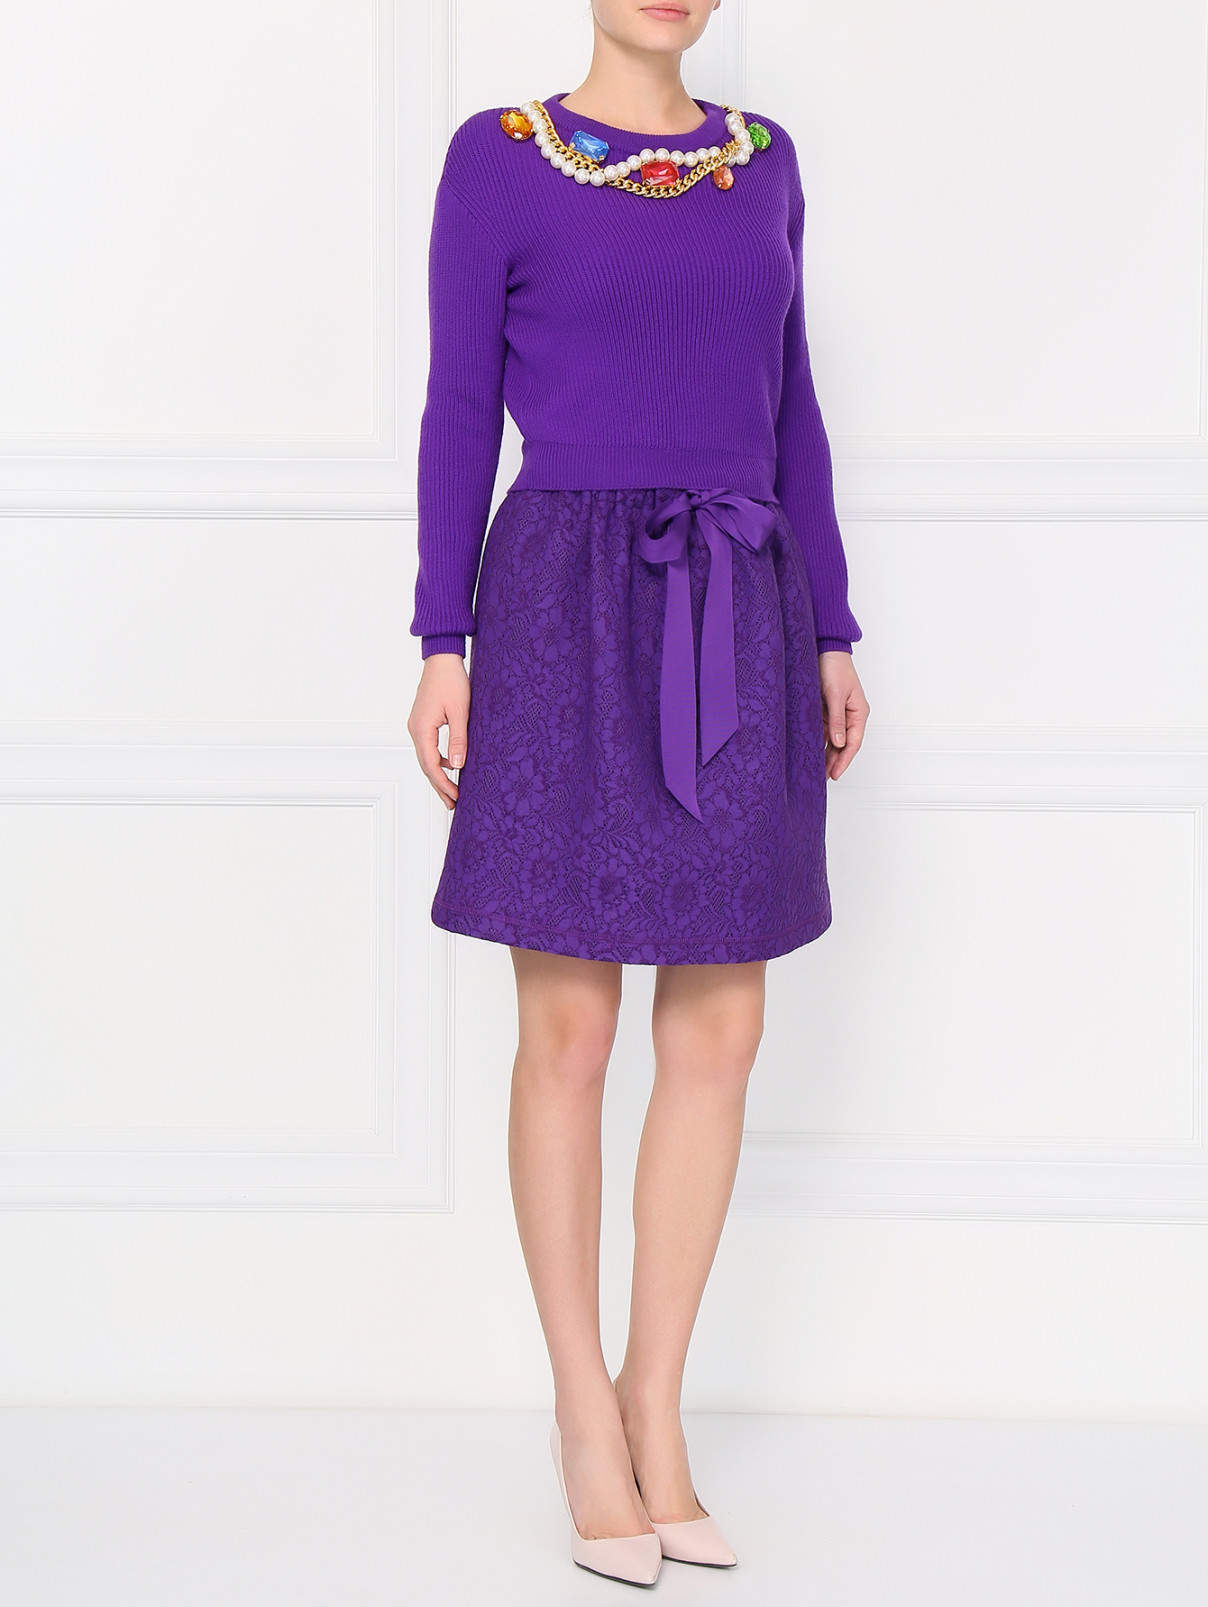 Юбка из кружевного полотна на резинке Moschino Boutique  –  Модель Общий вид  – Цвет:  Фиолетовый